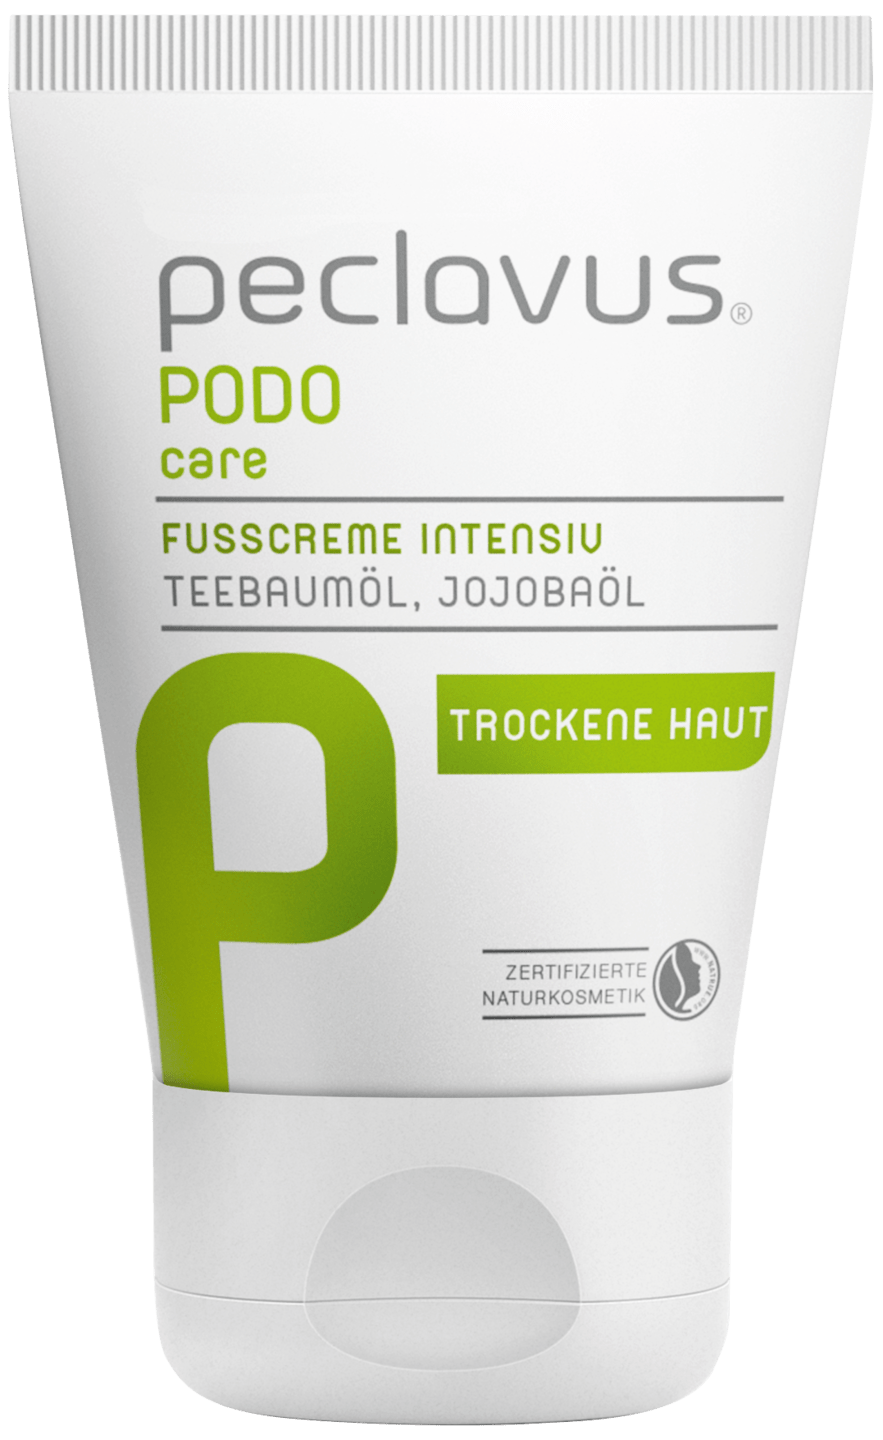 peclavus - Fußcreme intensiv, 30 ml